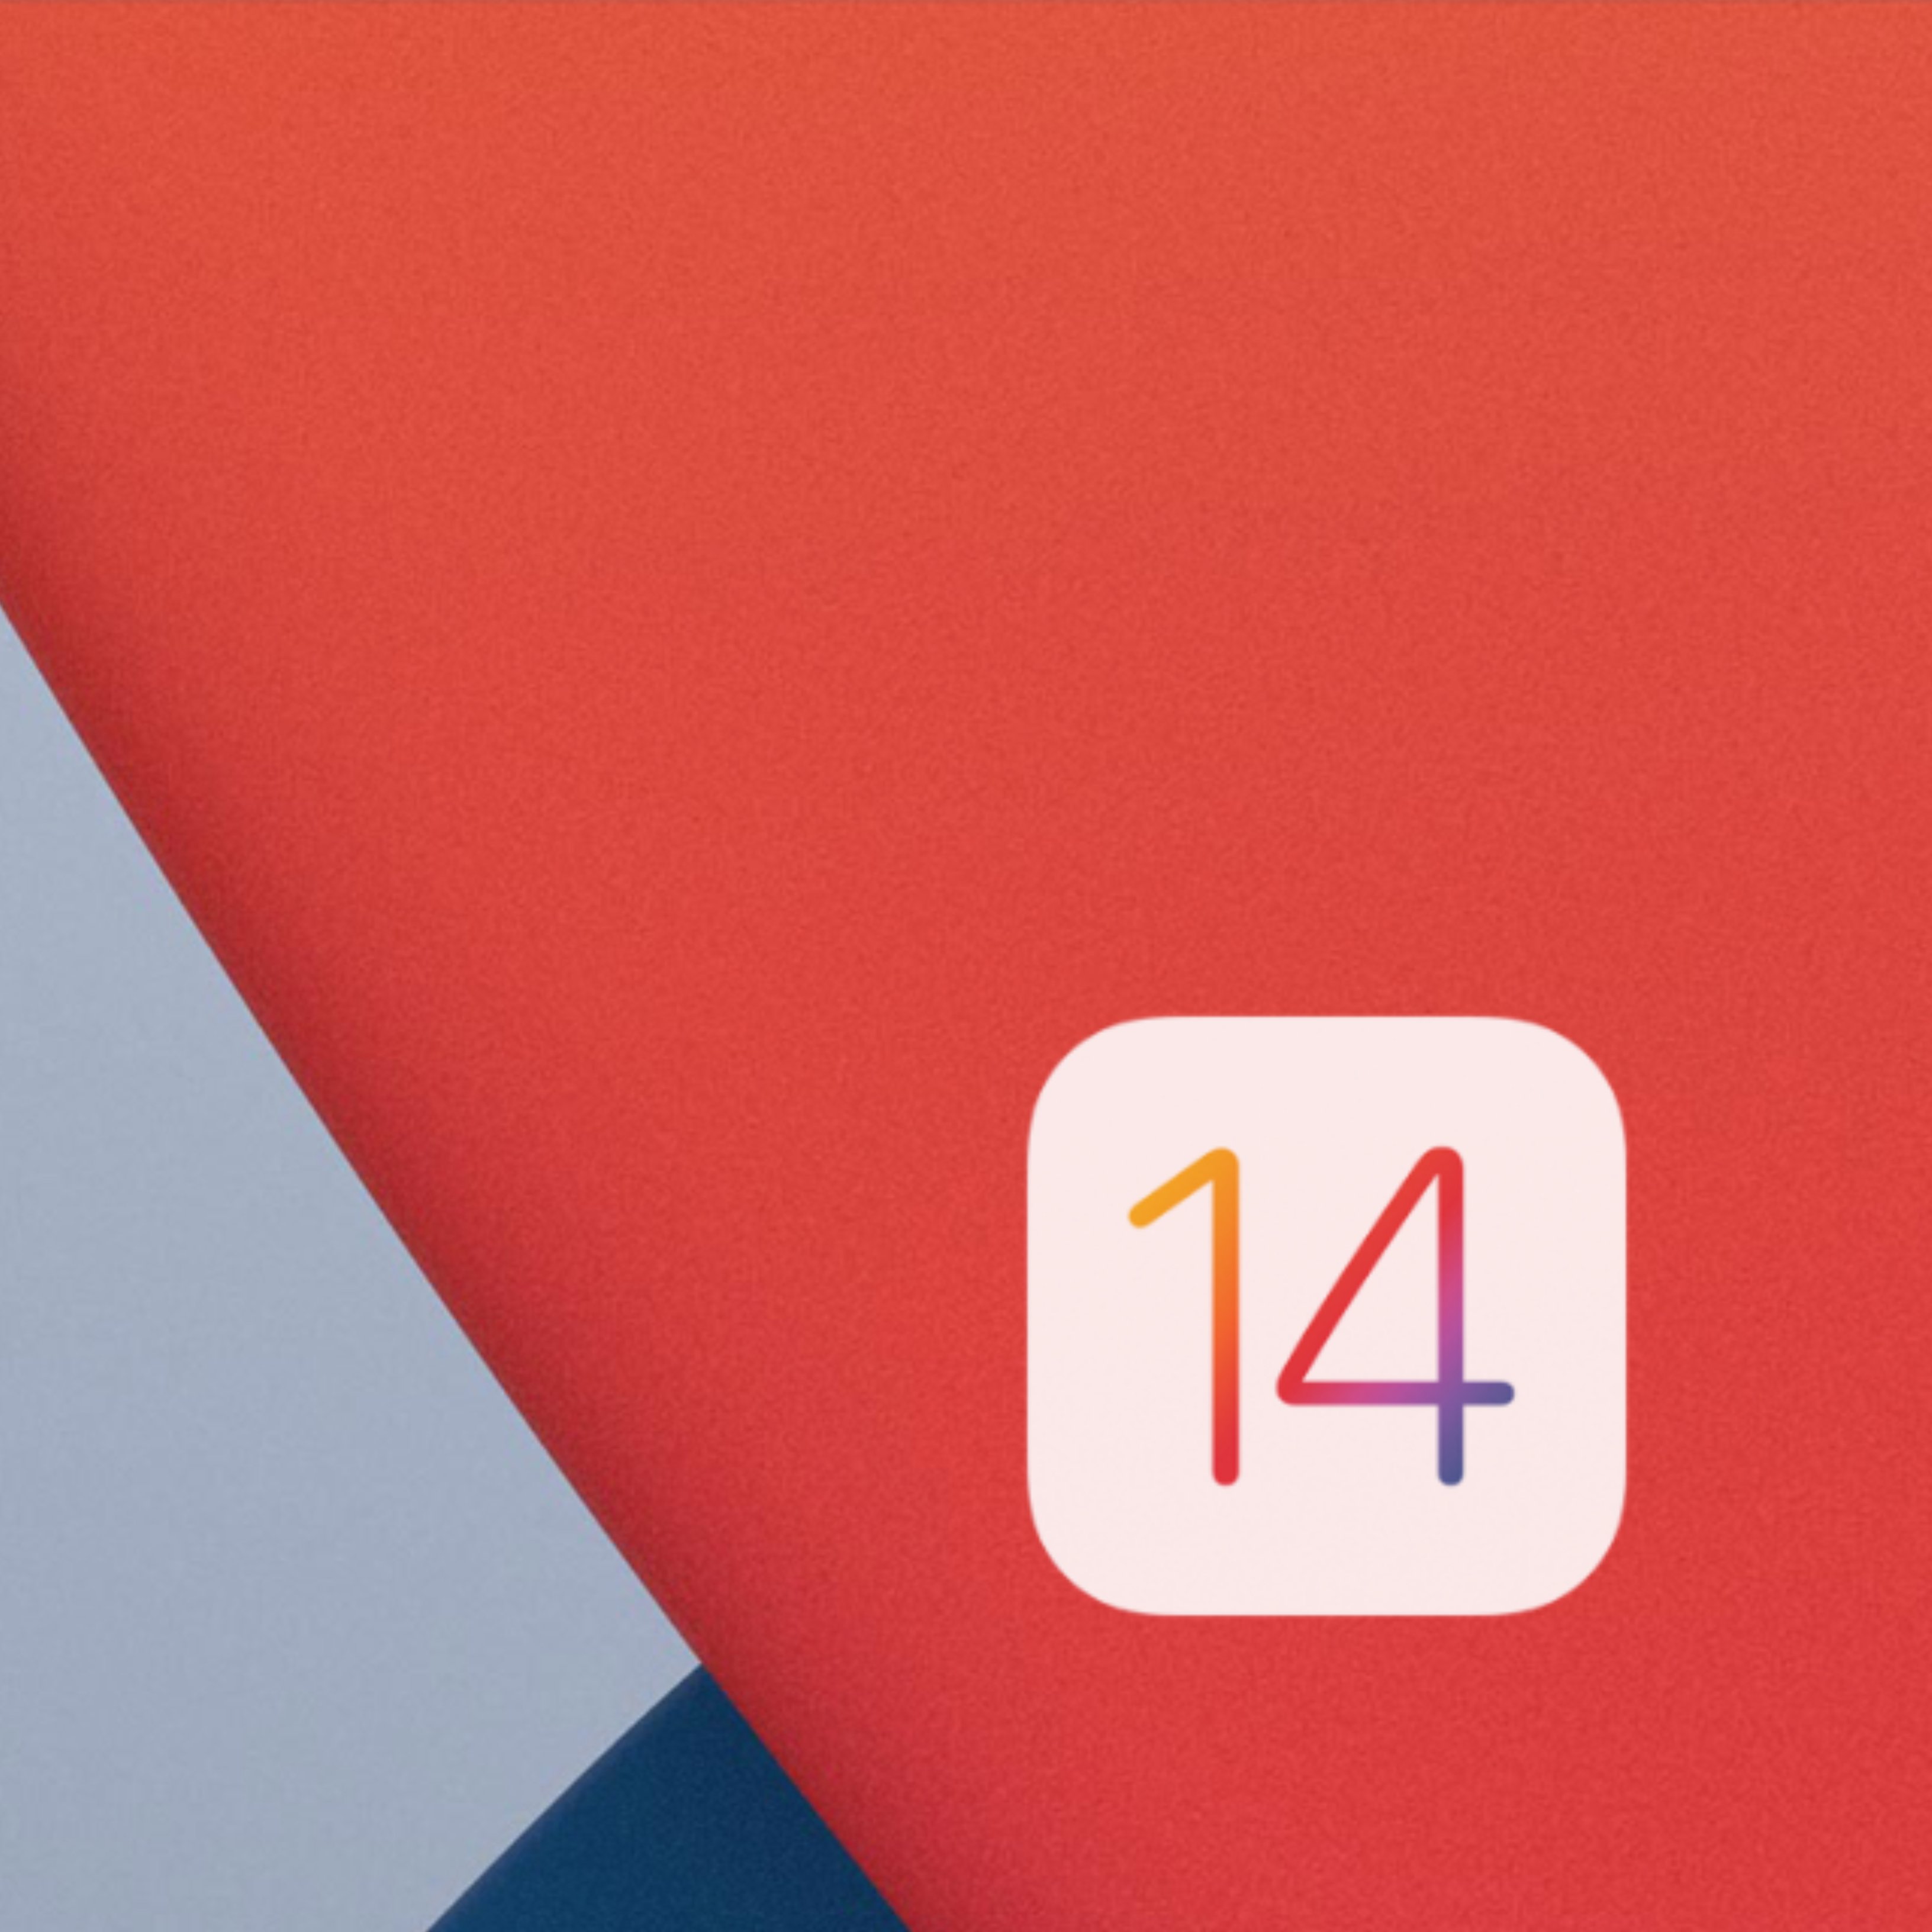 Actualiza ya tu iPhone a iOS 14 y descubre sus principales novedades